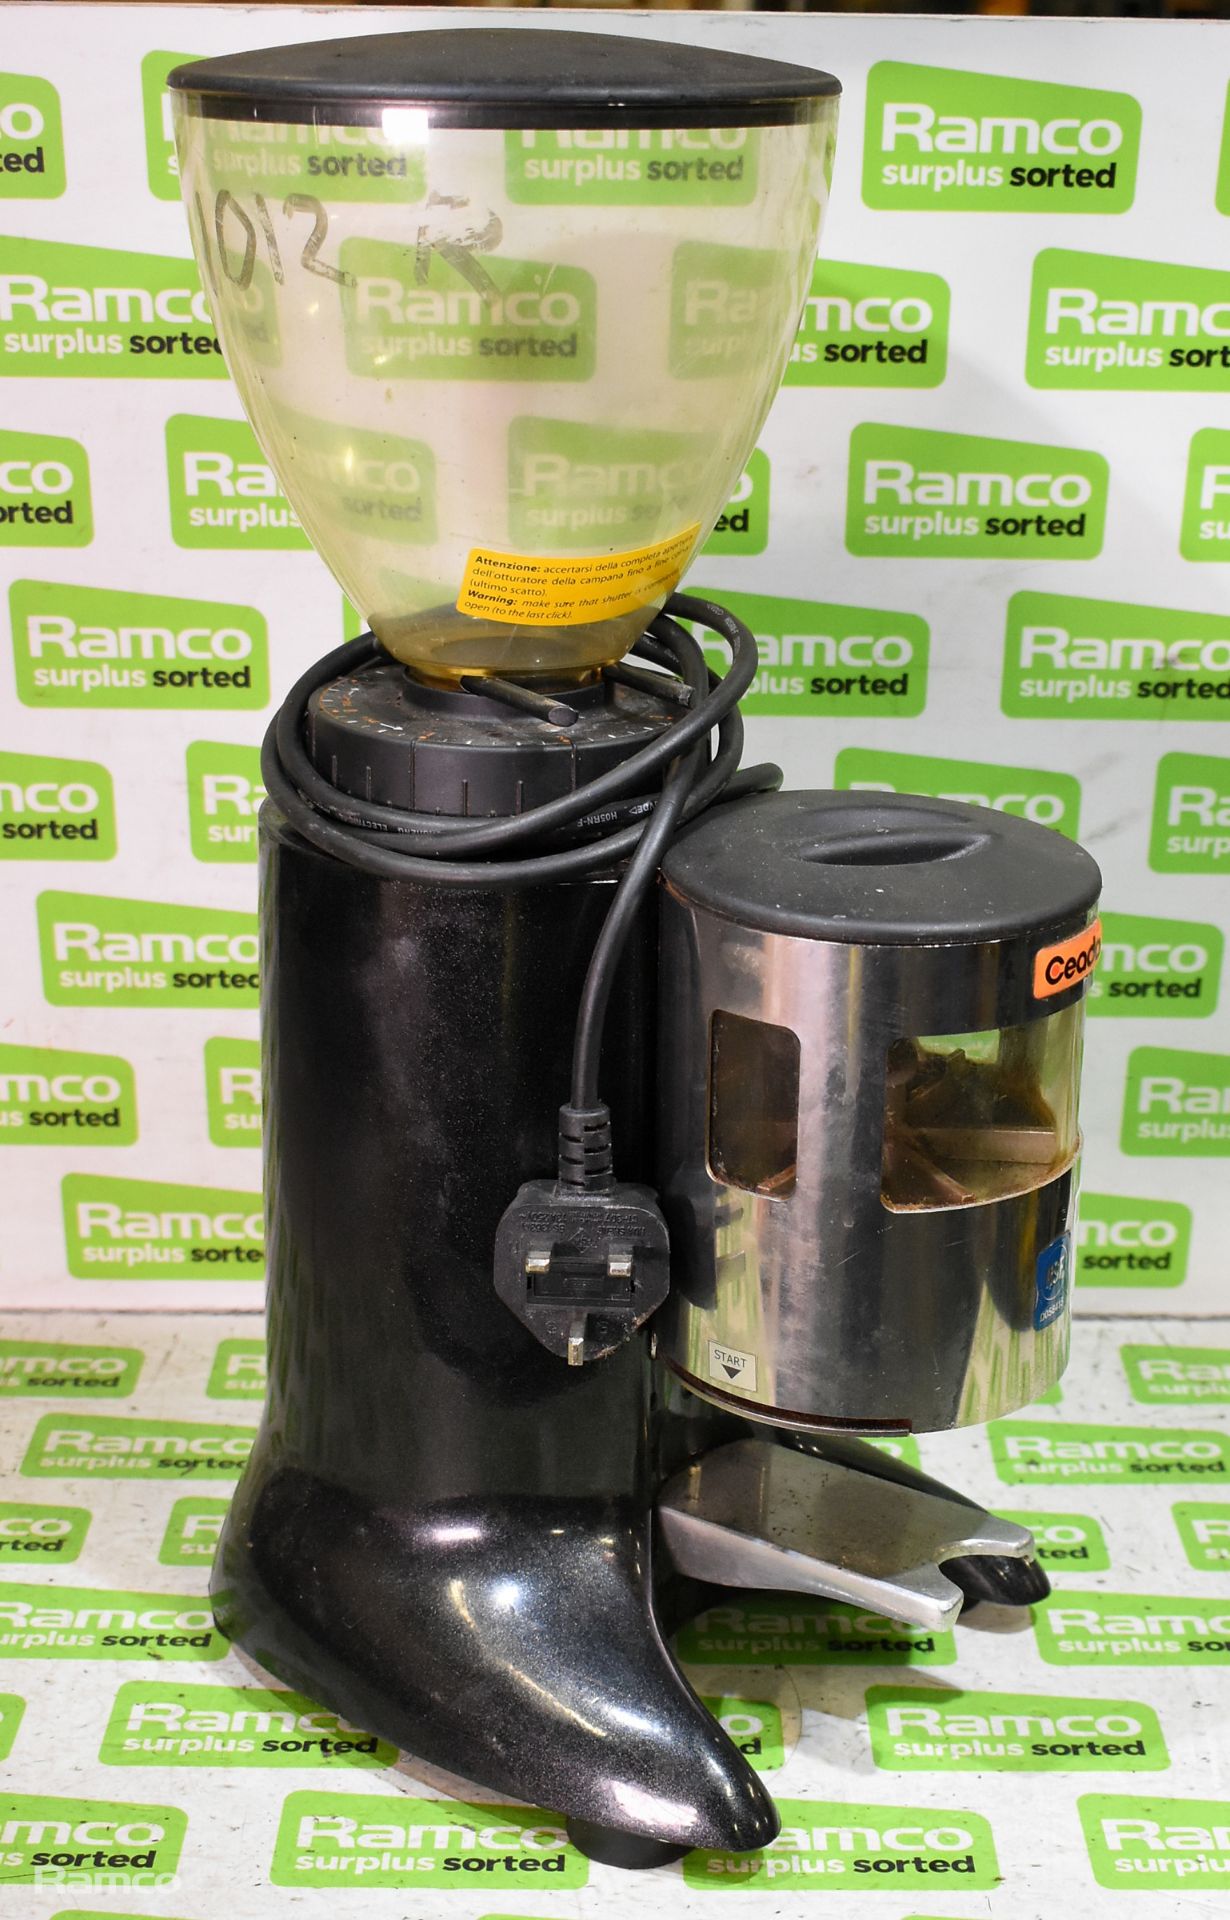 Ceado E6X espresso coffee grinder & Ceado E6X espresso coffee grinder - body only - Image 8 of 10